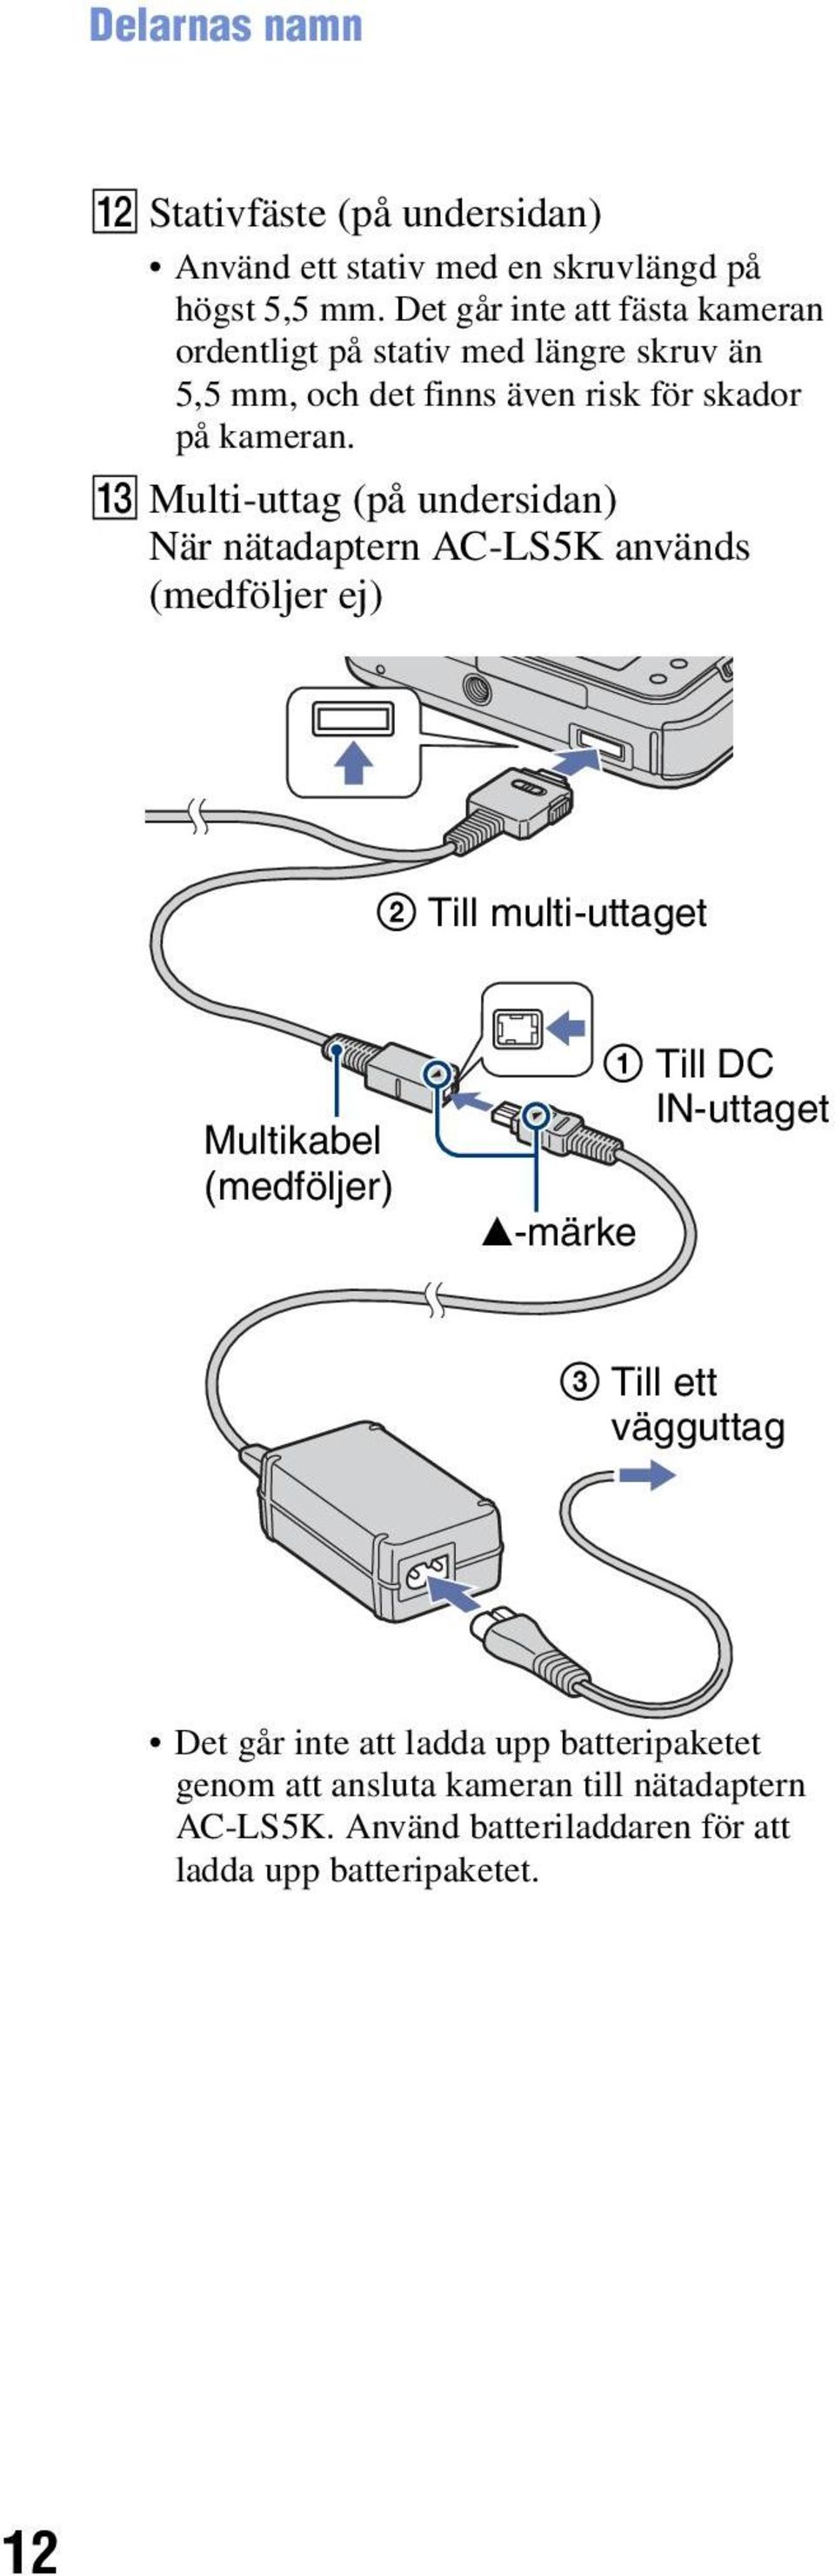 M Multi-uttag (på undersidan) När nätadaptern AC-LS5K används (medföljer ej) 2 Till multi-uttaget Multikabel (medföljer) v-märke 1 Till